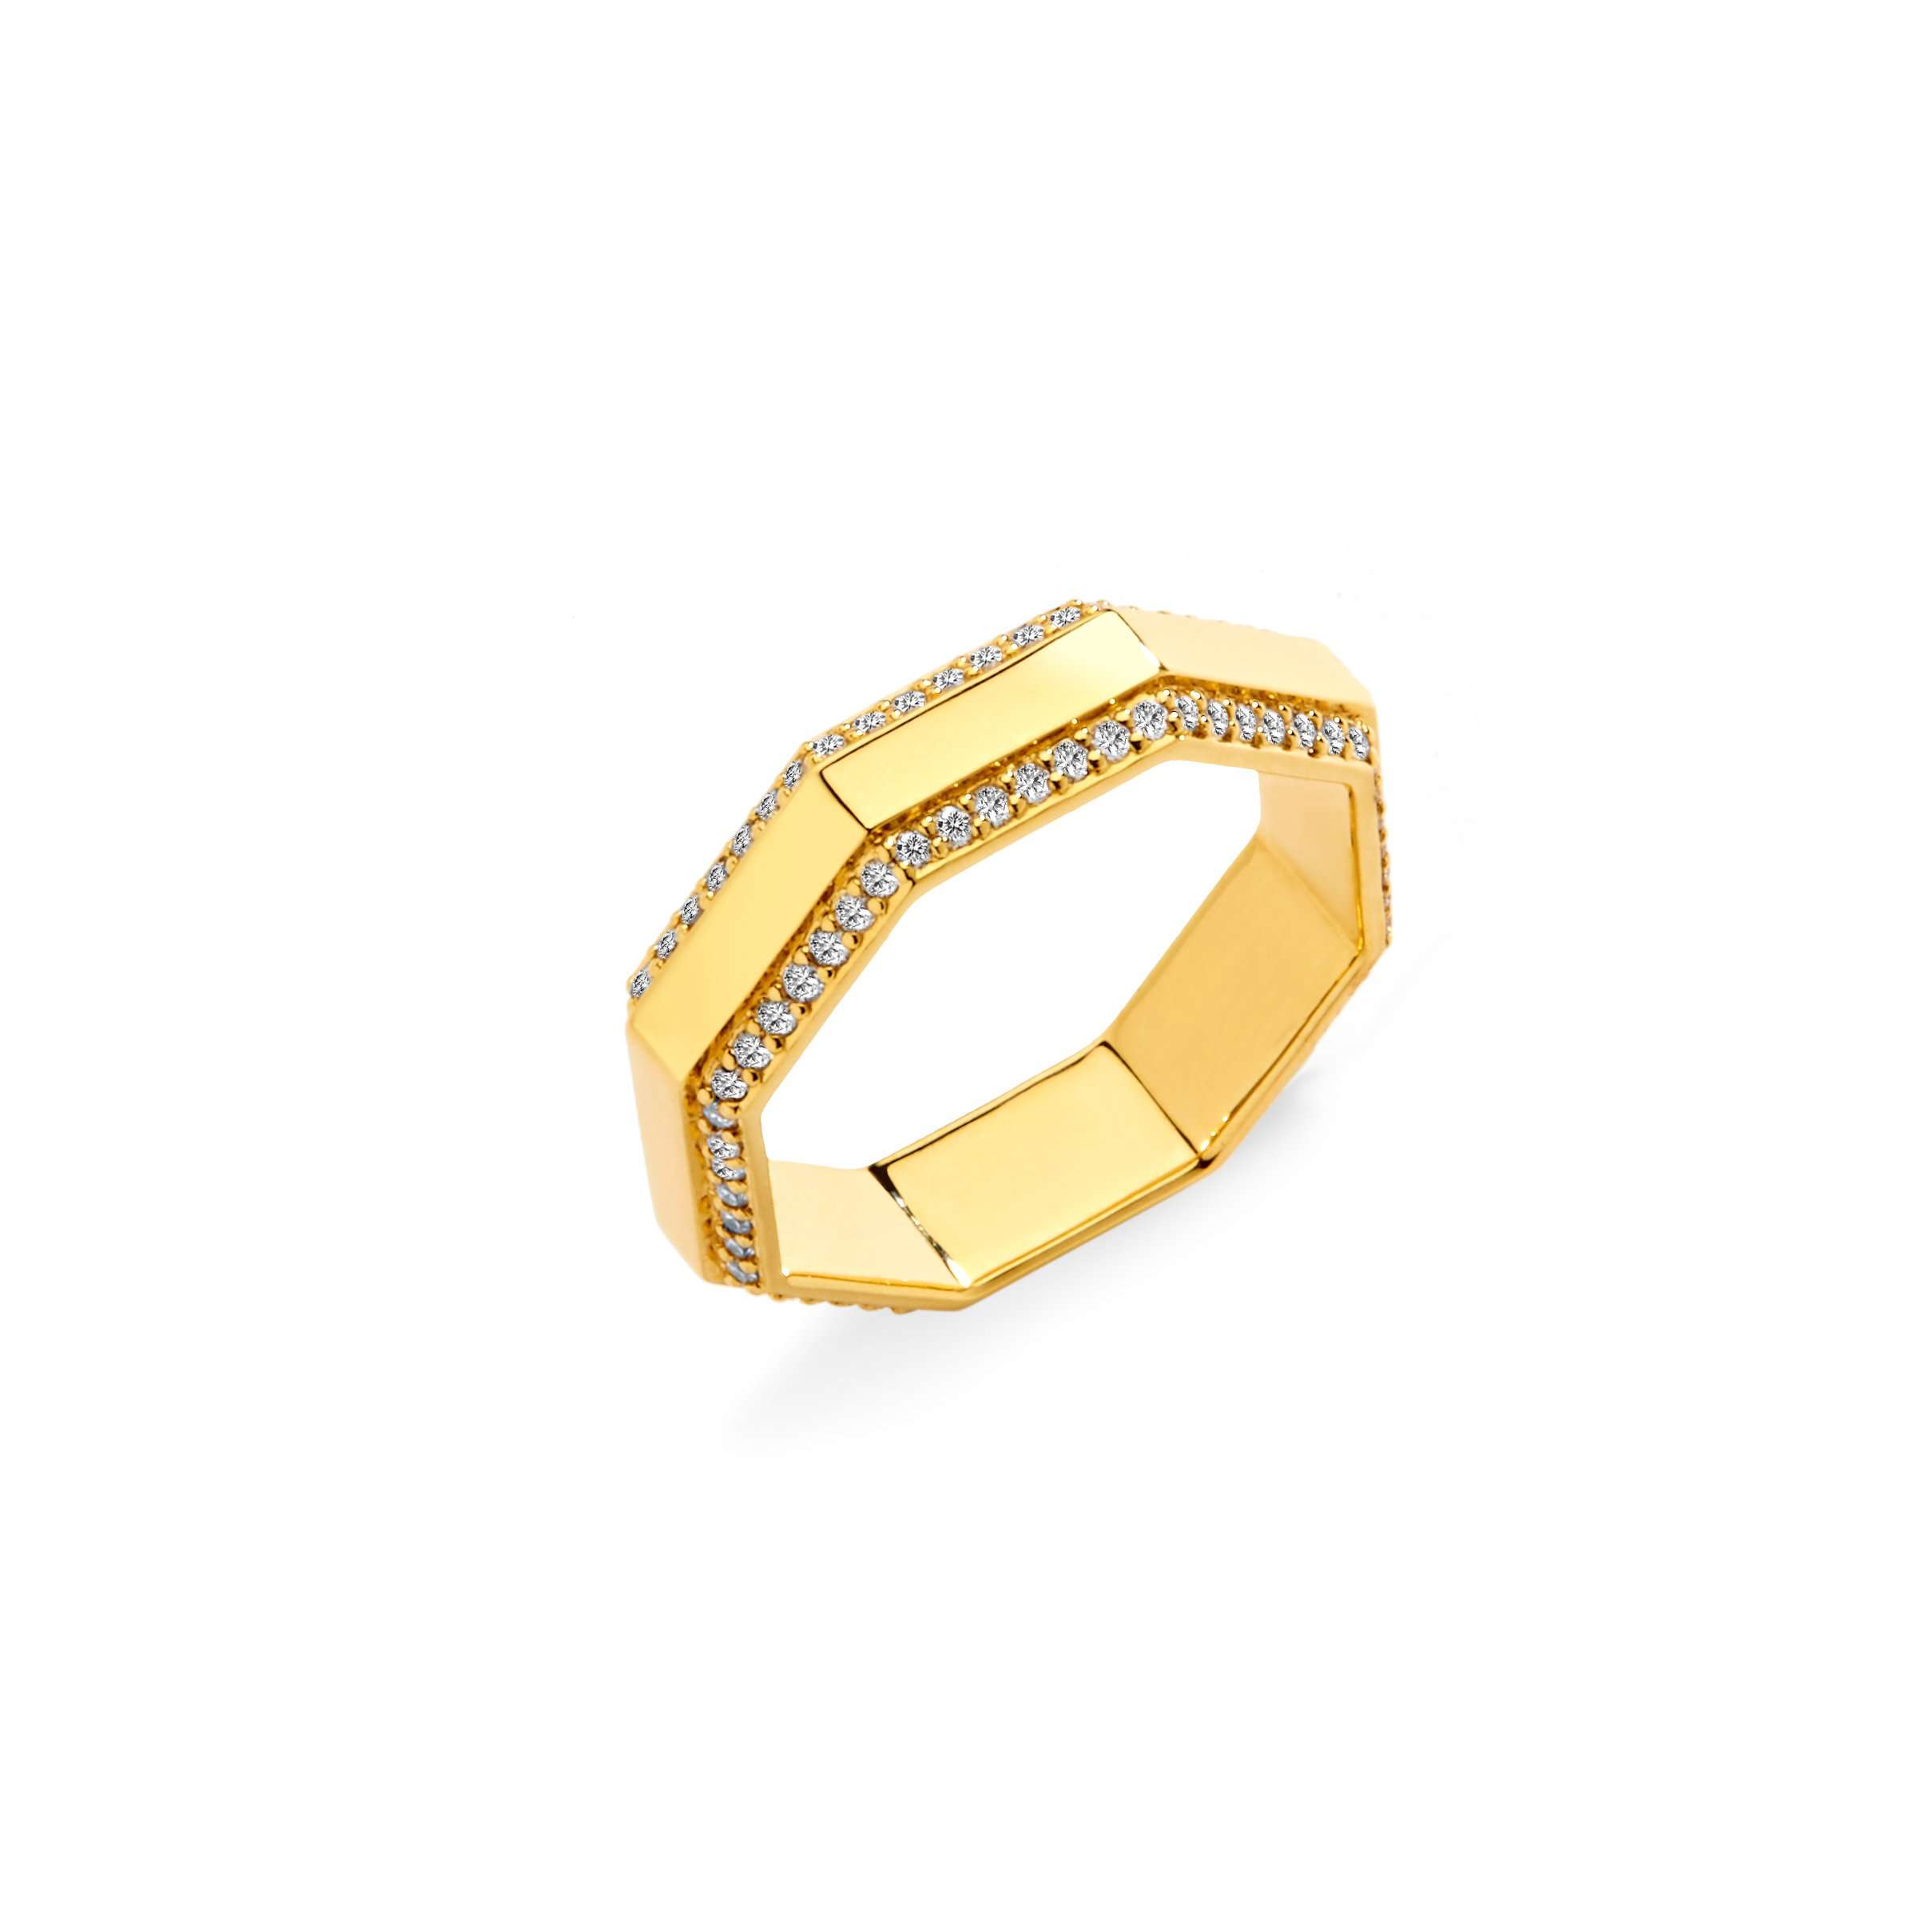 Bague fantaisie anneau fin octogonal en argent doré à l'or fin